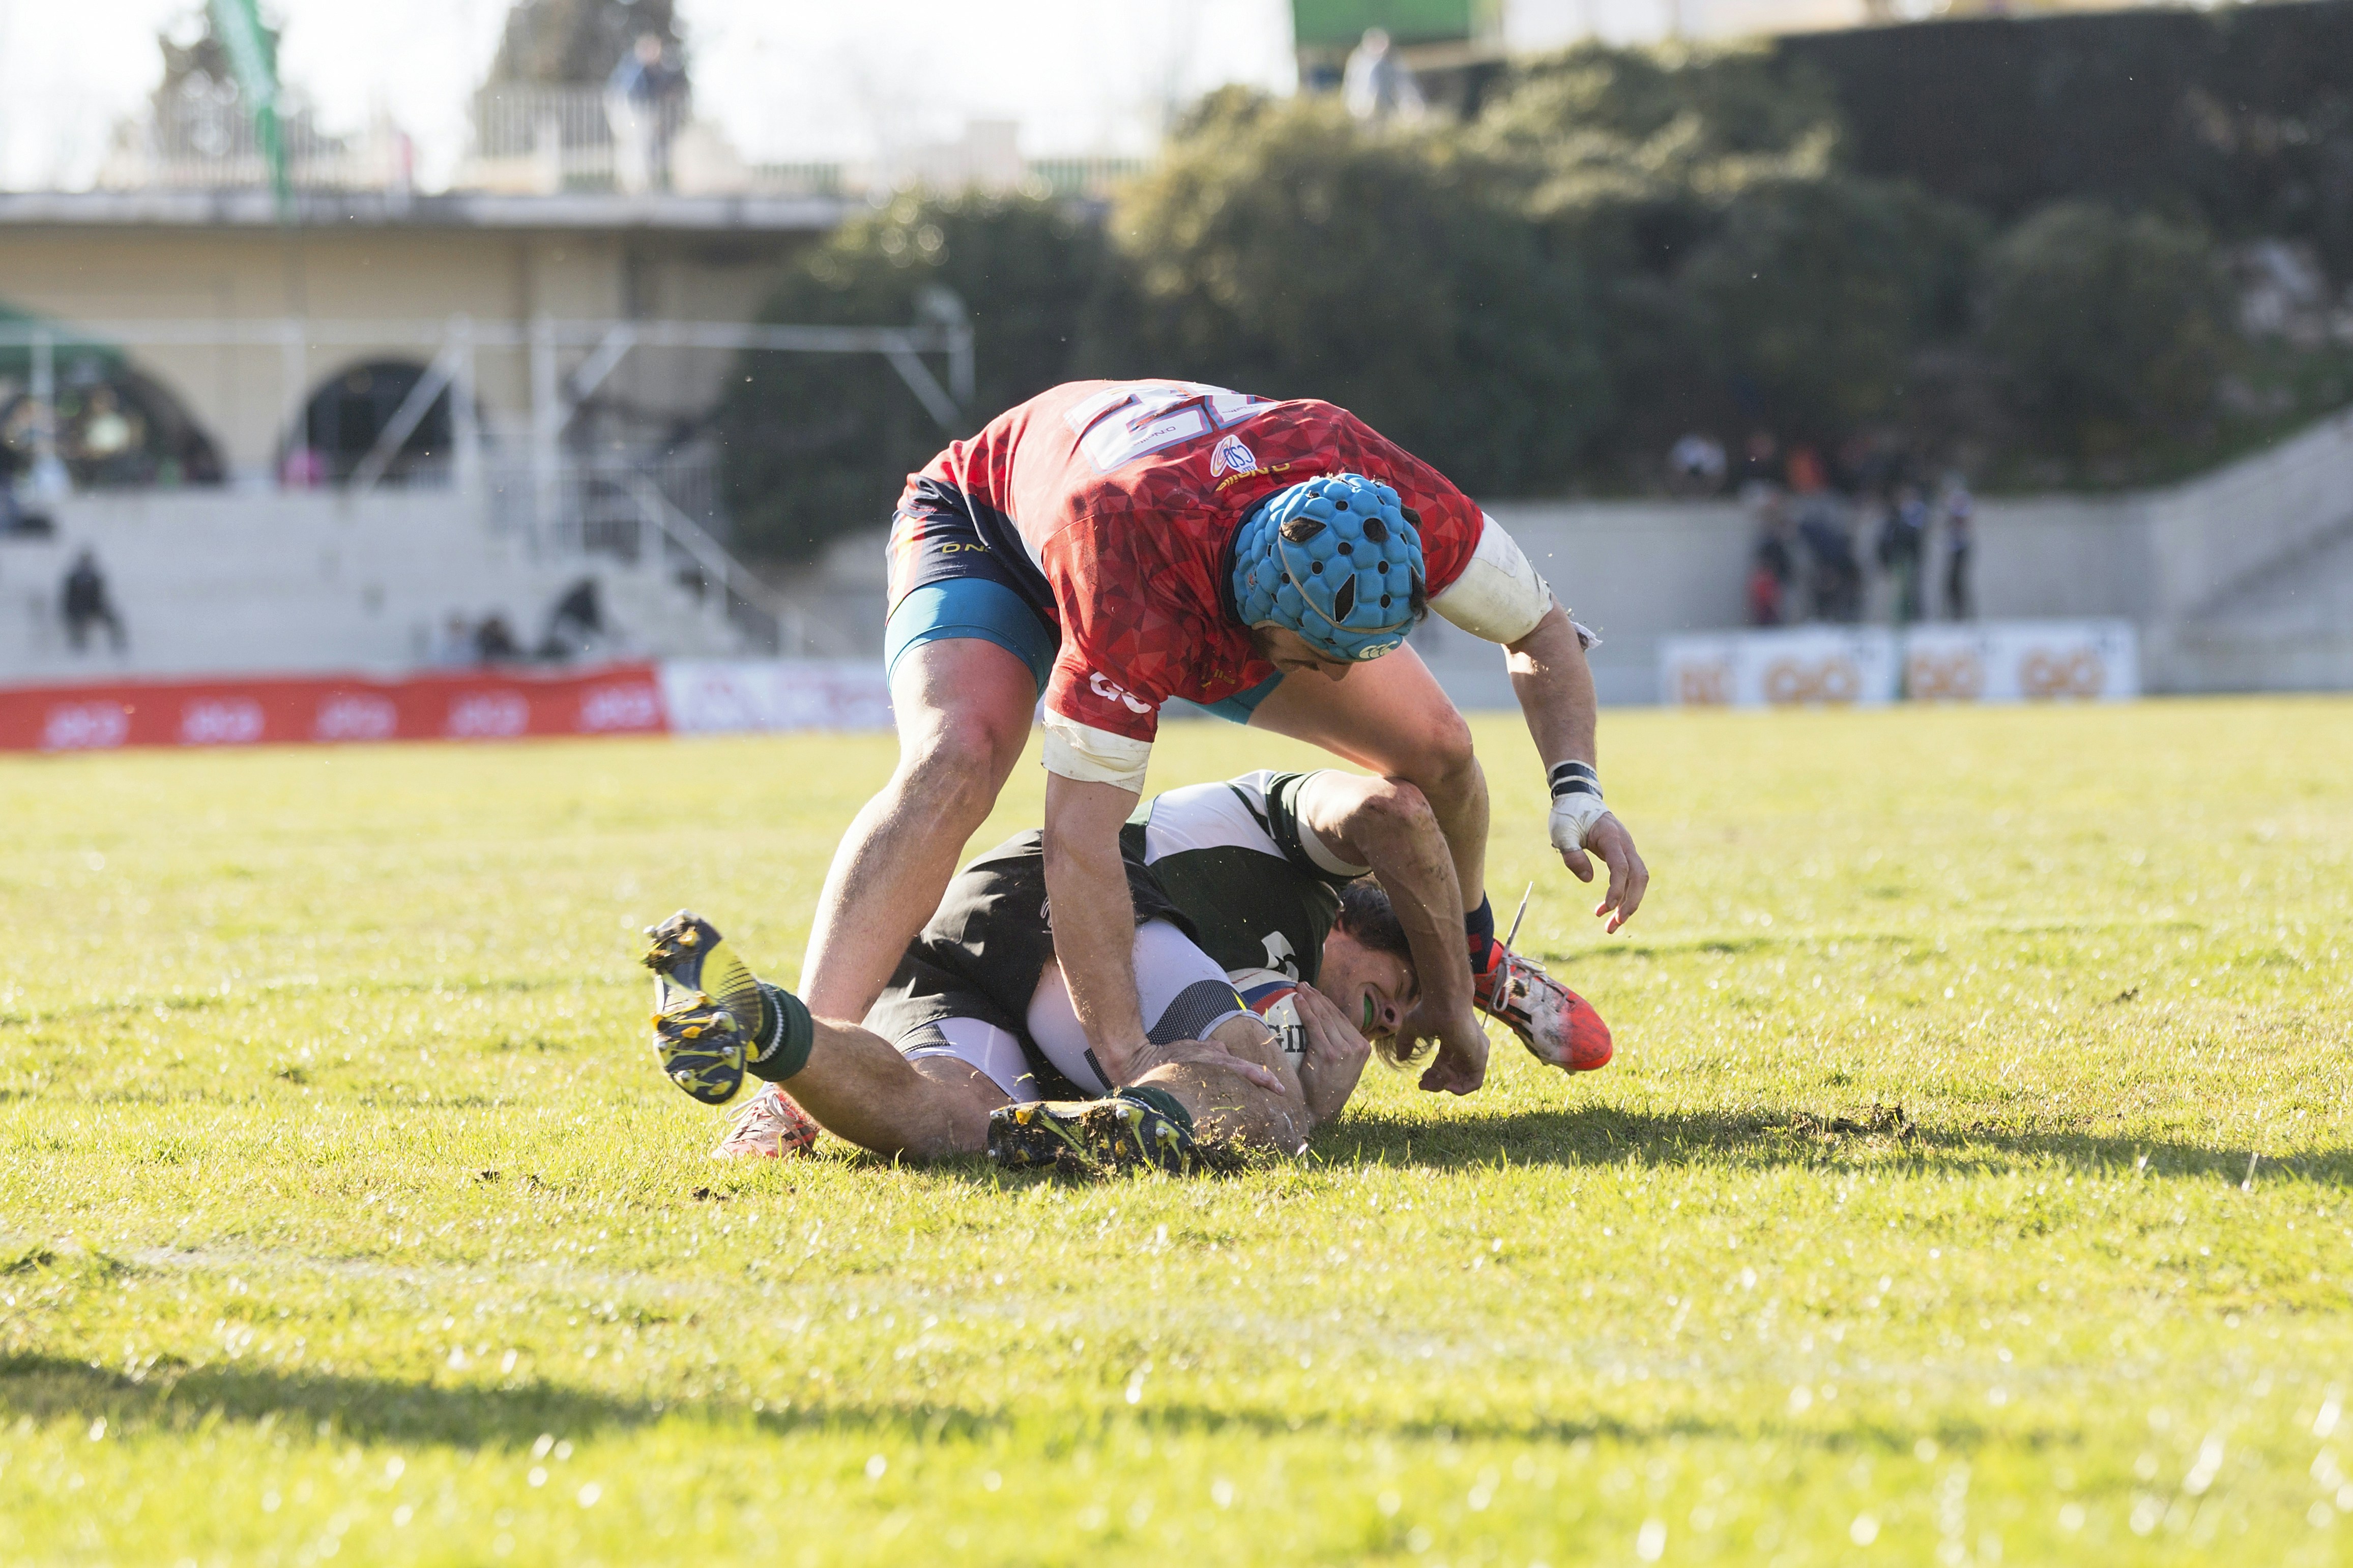 Un momento del partido de rugby jugado entre la Selección Española de Rugby y la Selección Portuguesa el dia 12-03-2016 en el Campo de Rugby Central (Madrid).